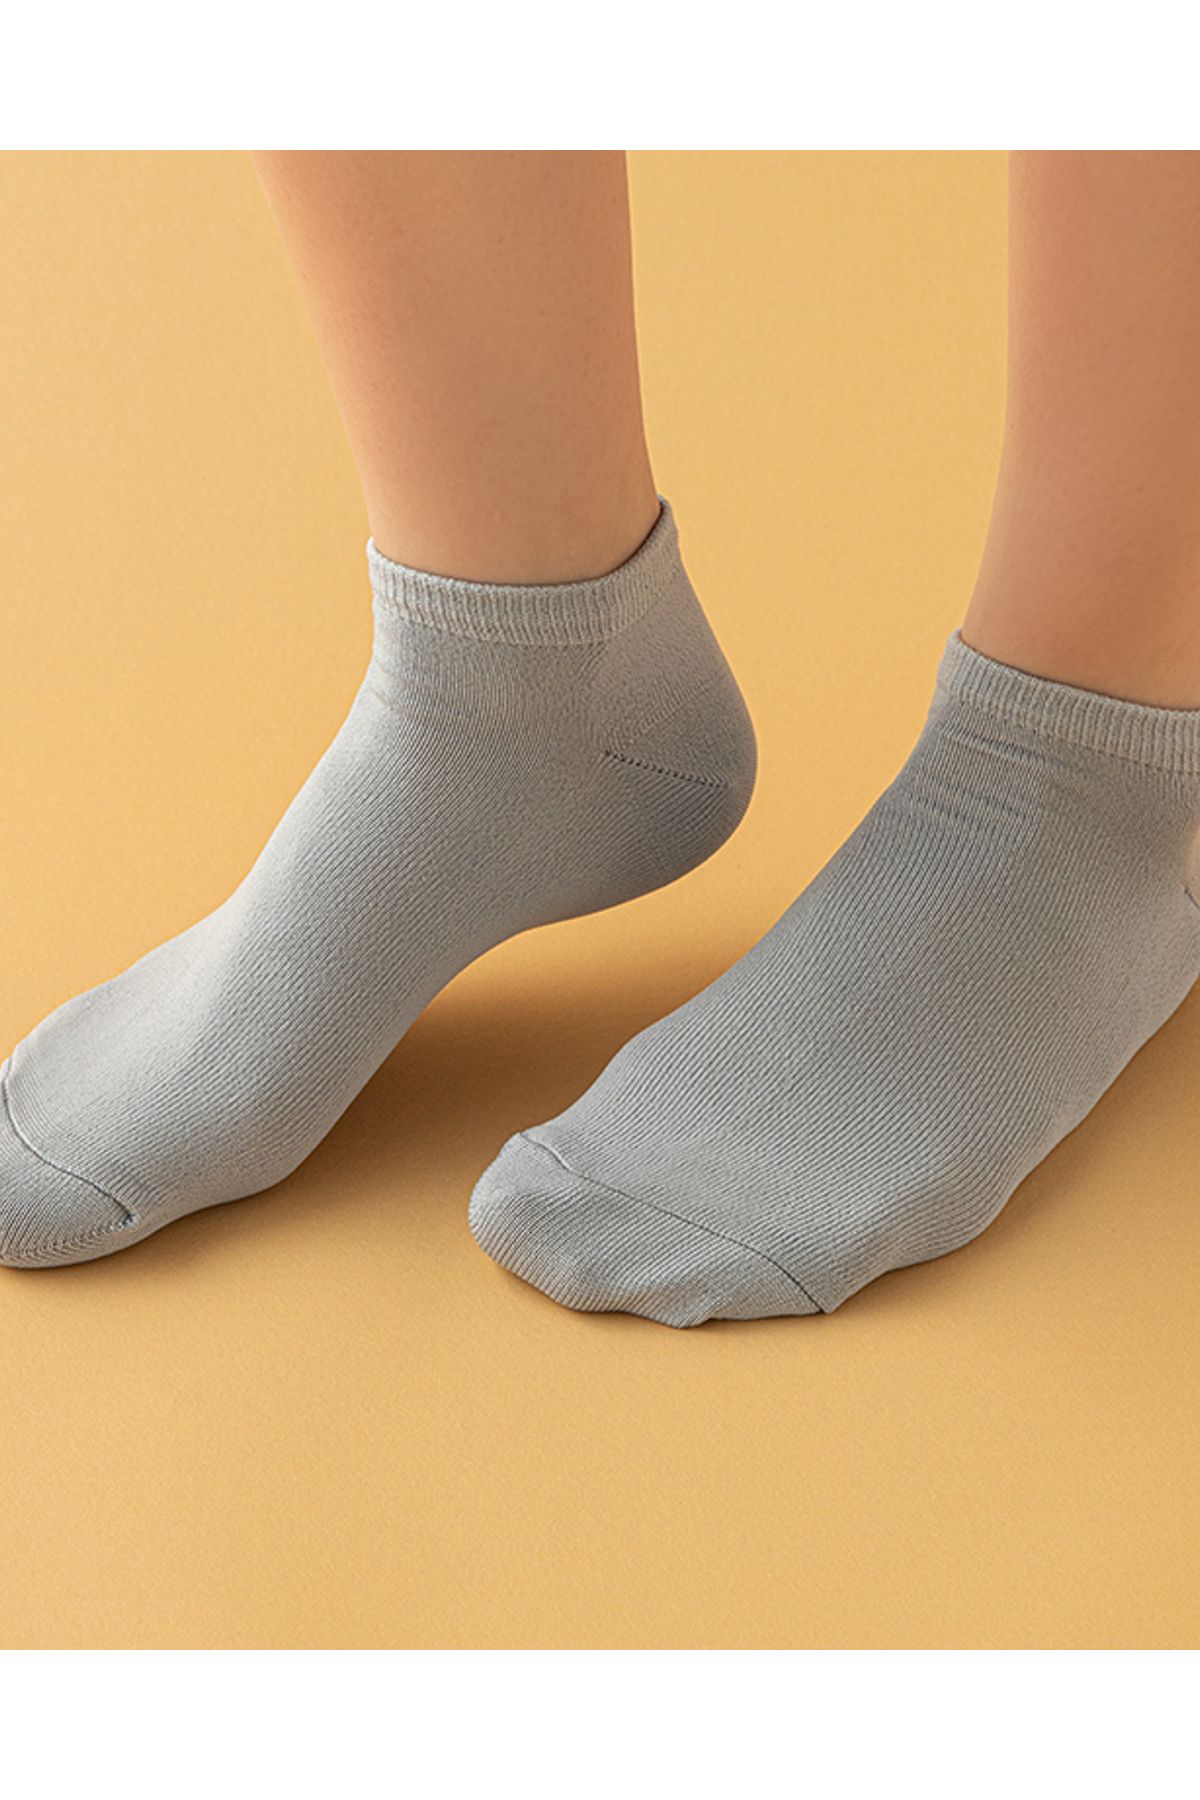 English Home Alvin Kadın 3'lü Patik Çorap Siyah-beyaz-gri